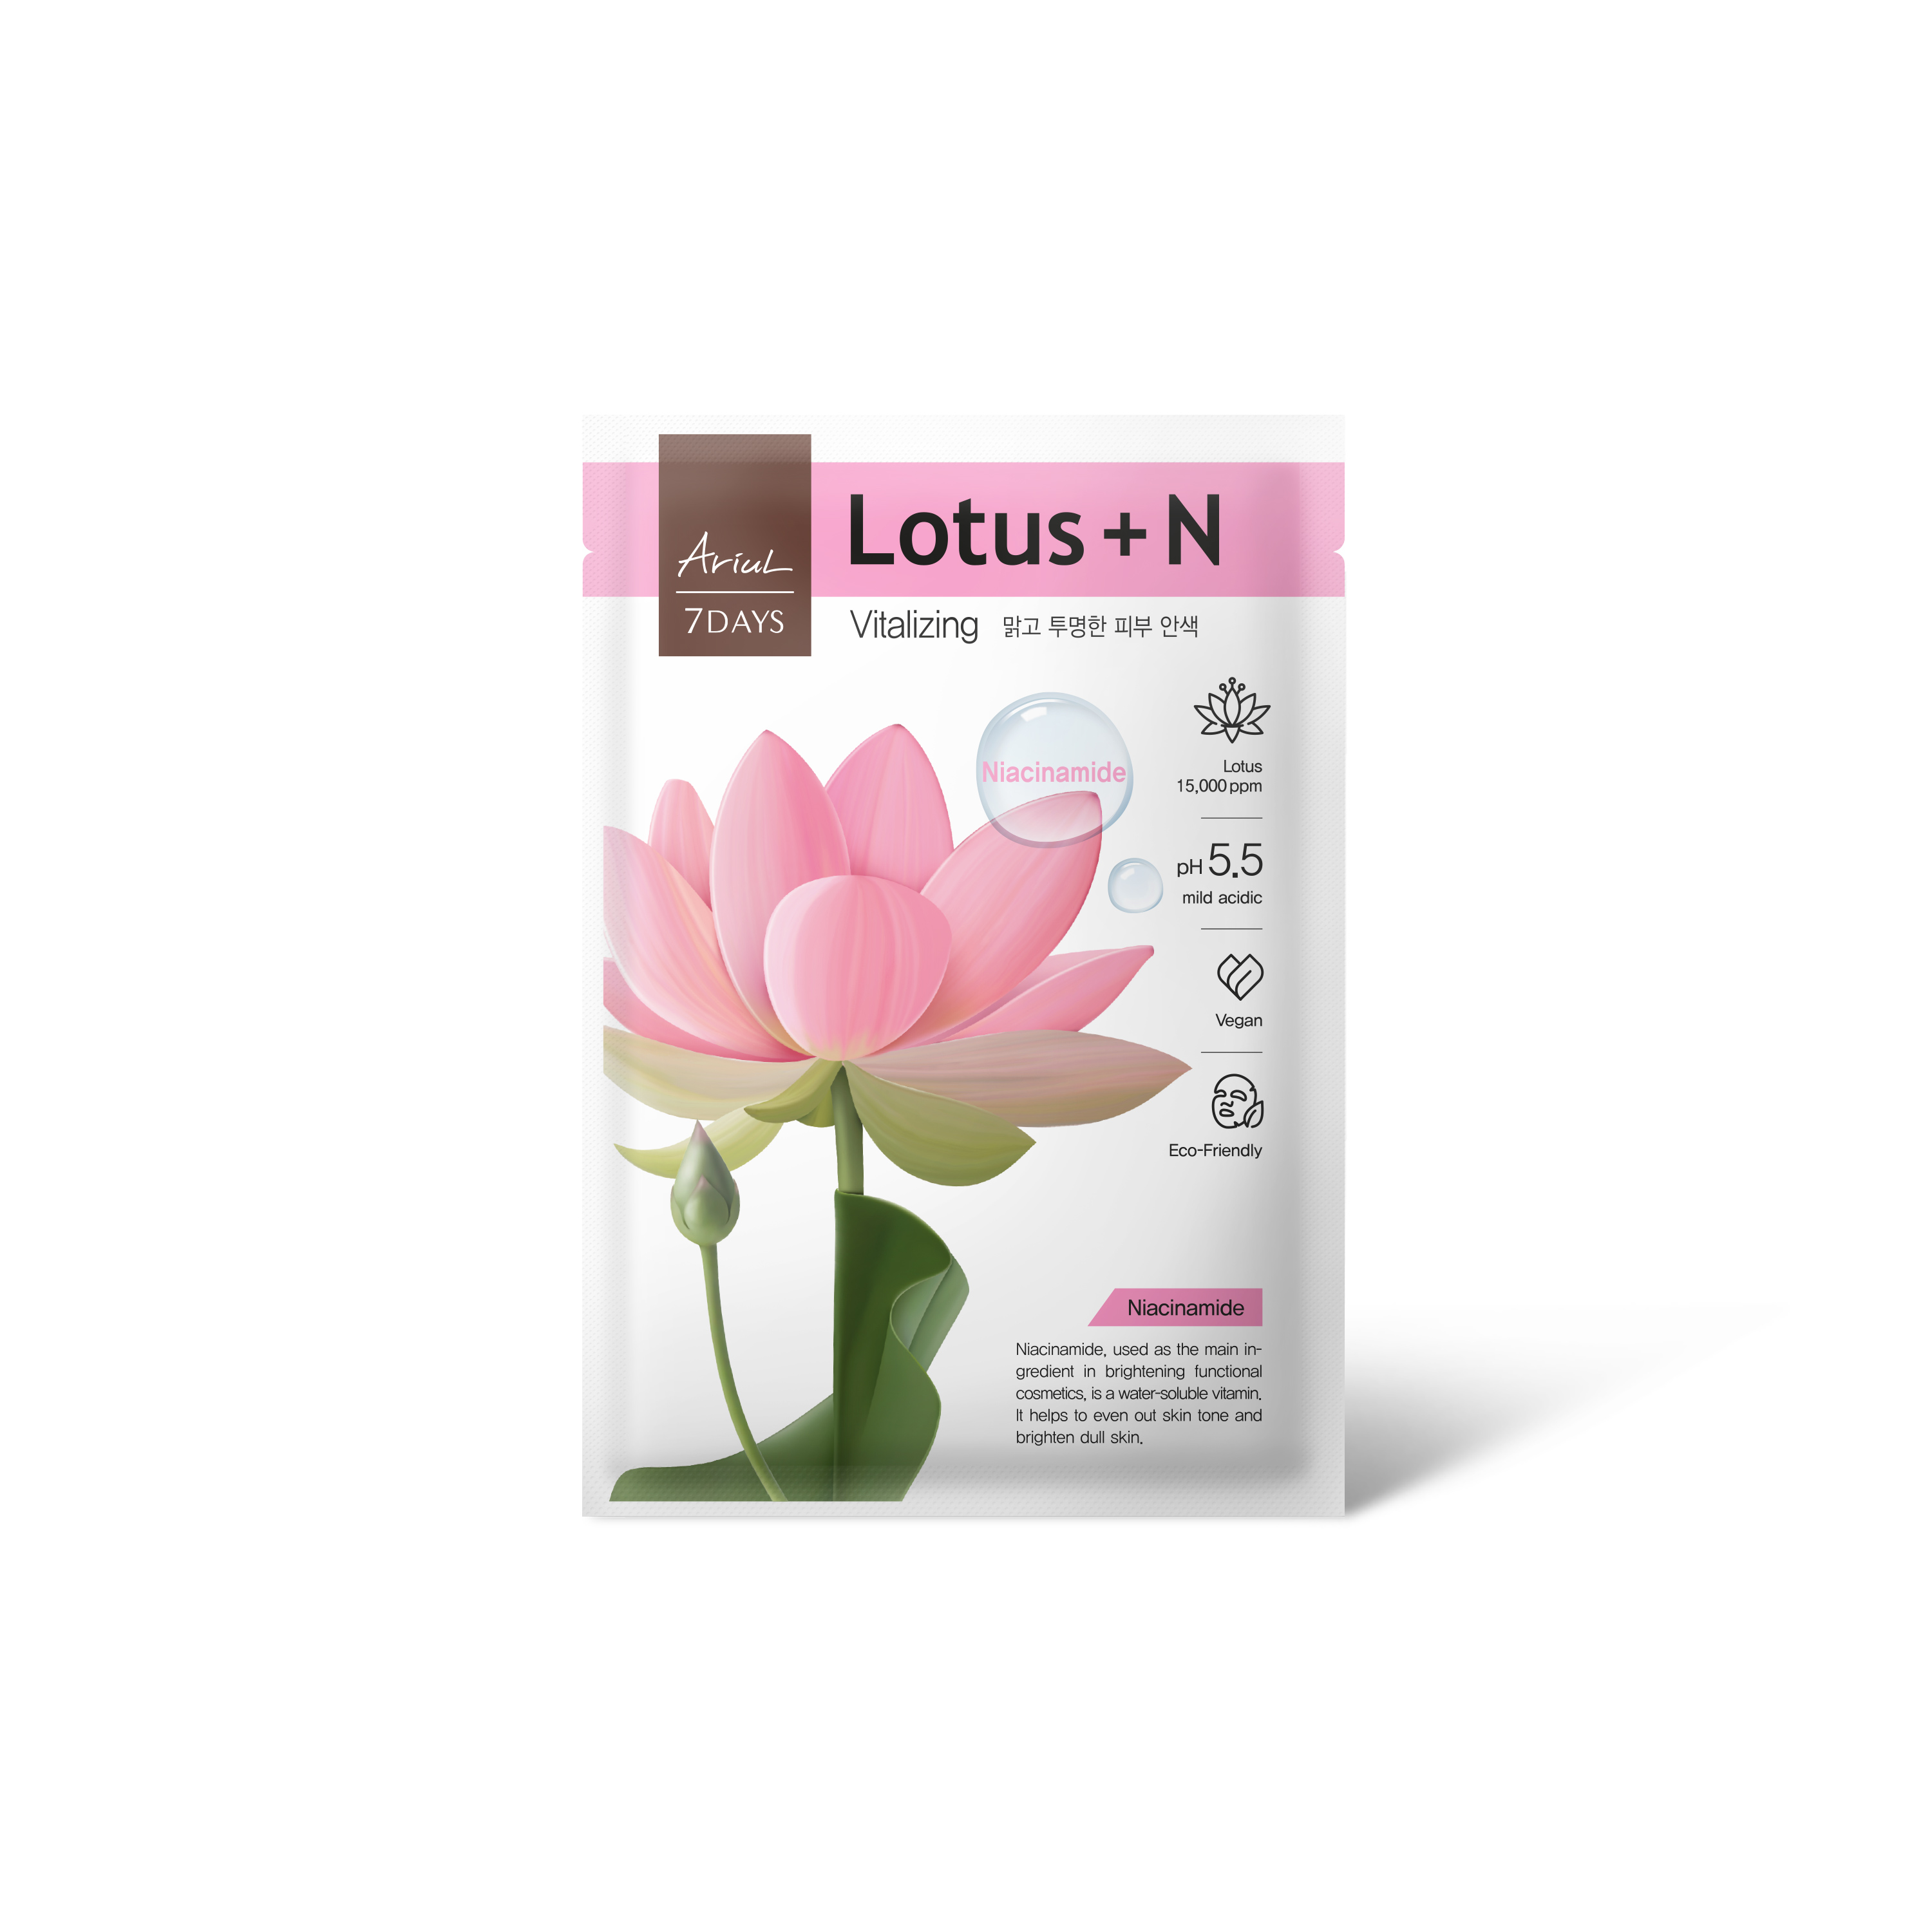 Masca cu Lotus + N (Niacinamide), 23 g, 7 Days